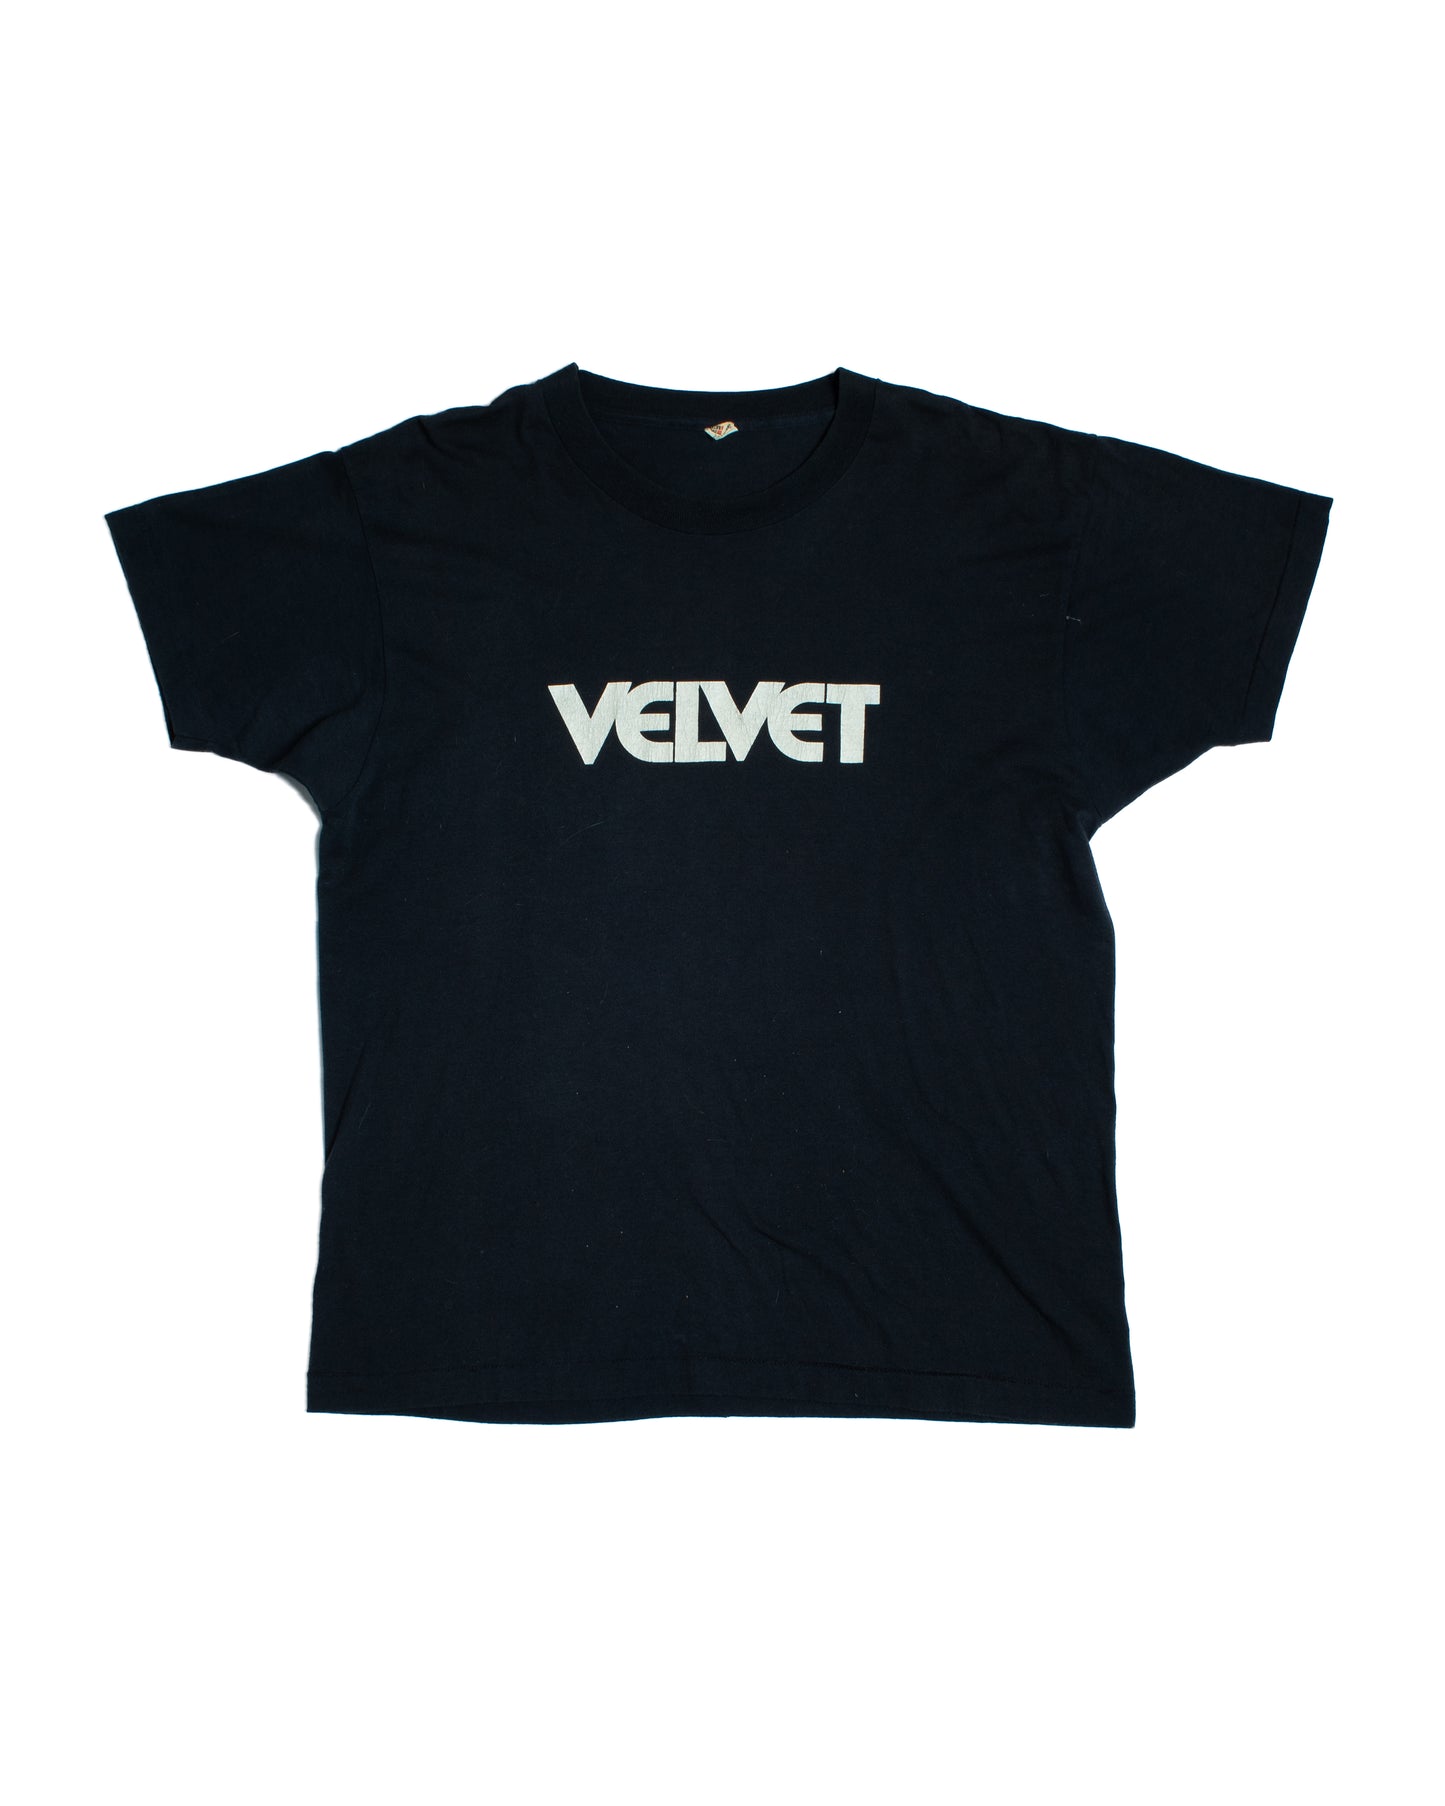 1970's Velvet Tee